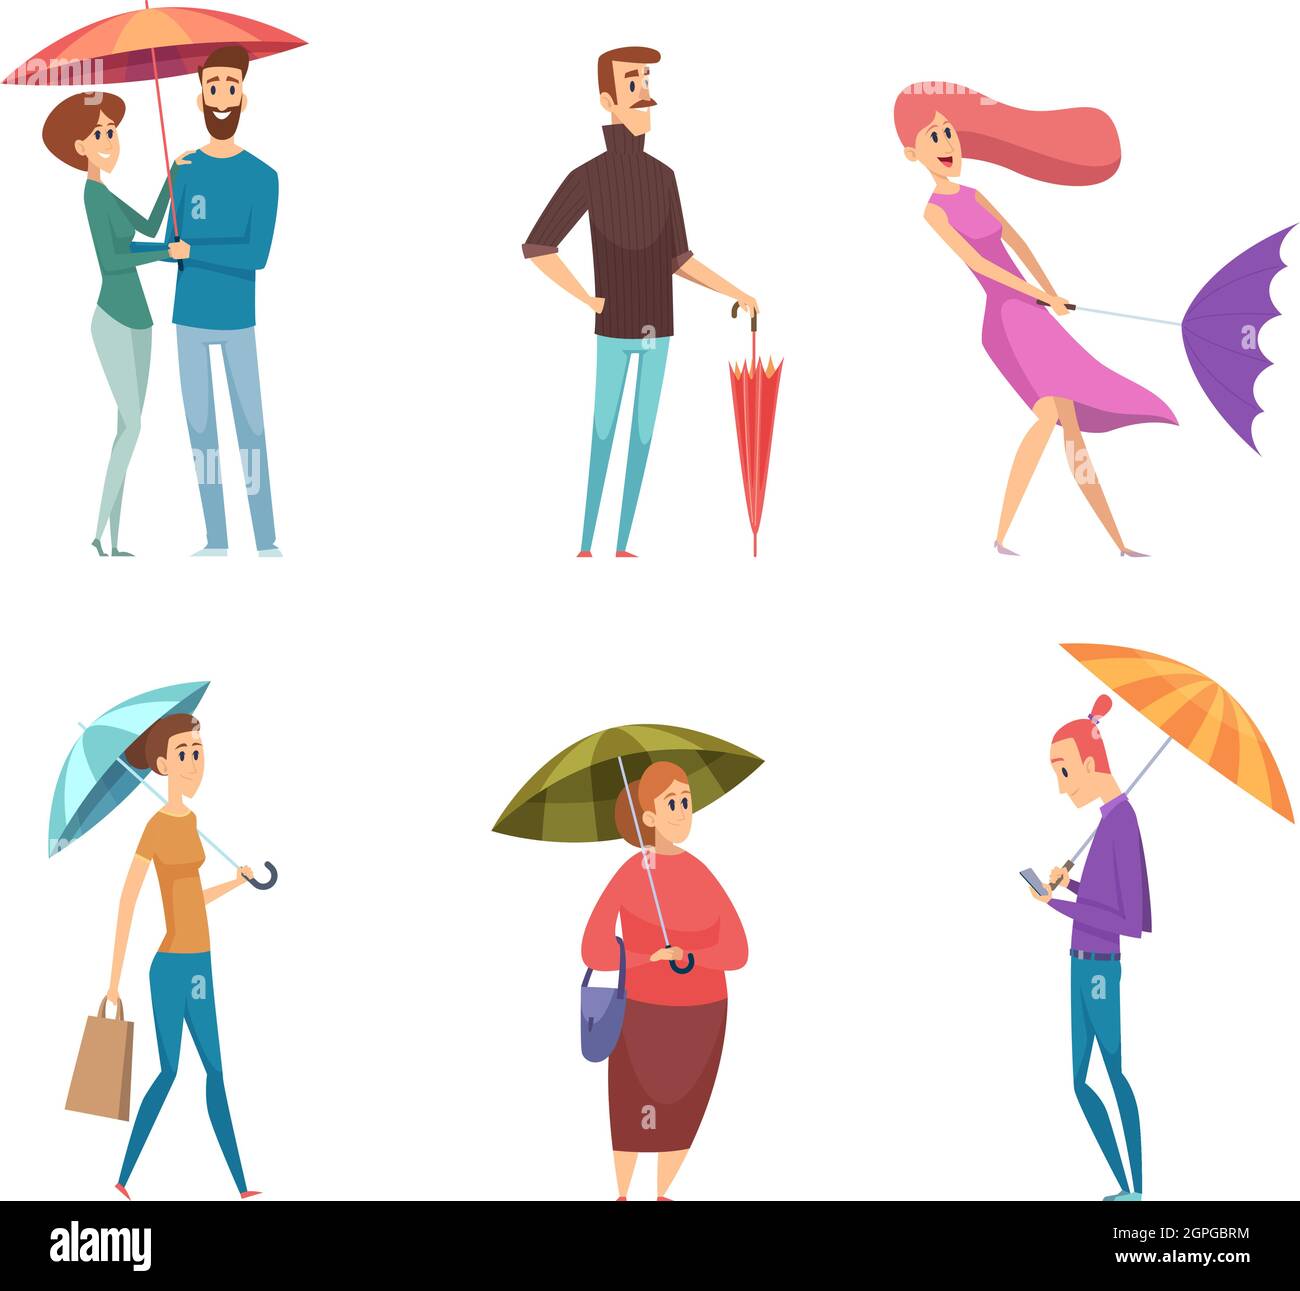 Personnes parapluie. Les personnages enfoncés dans la tenue de jour de pluie et la marche avec des parapluies vecteur adultes Illustration de Vecteur